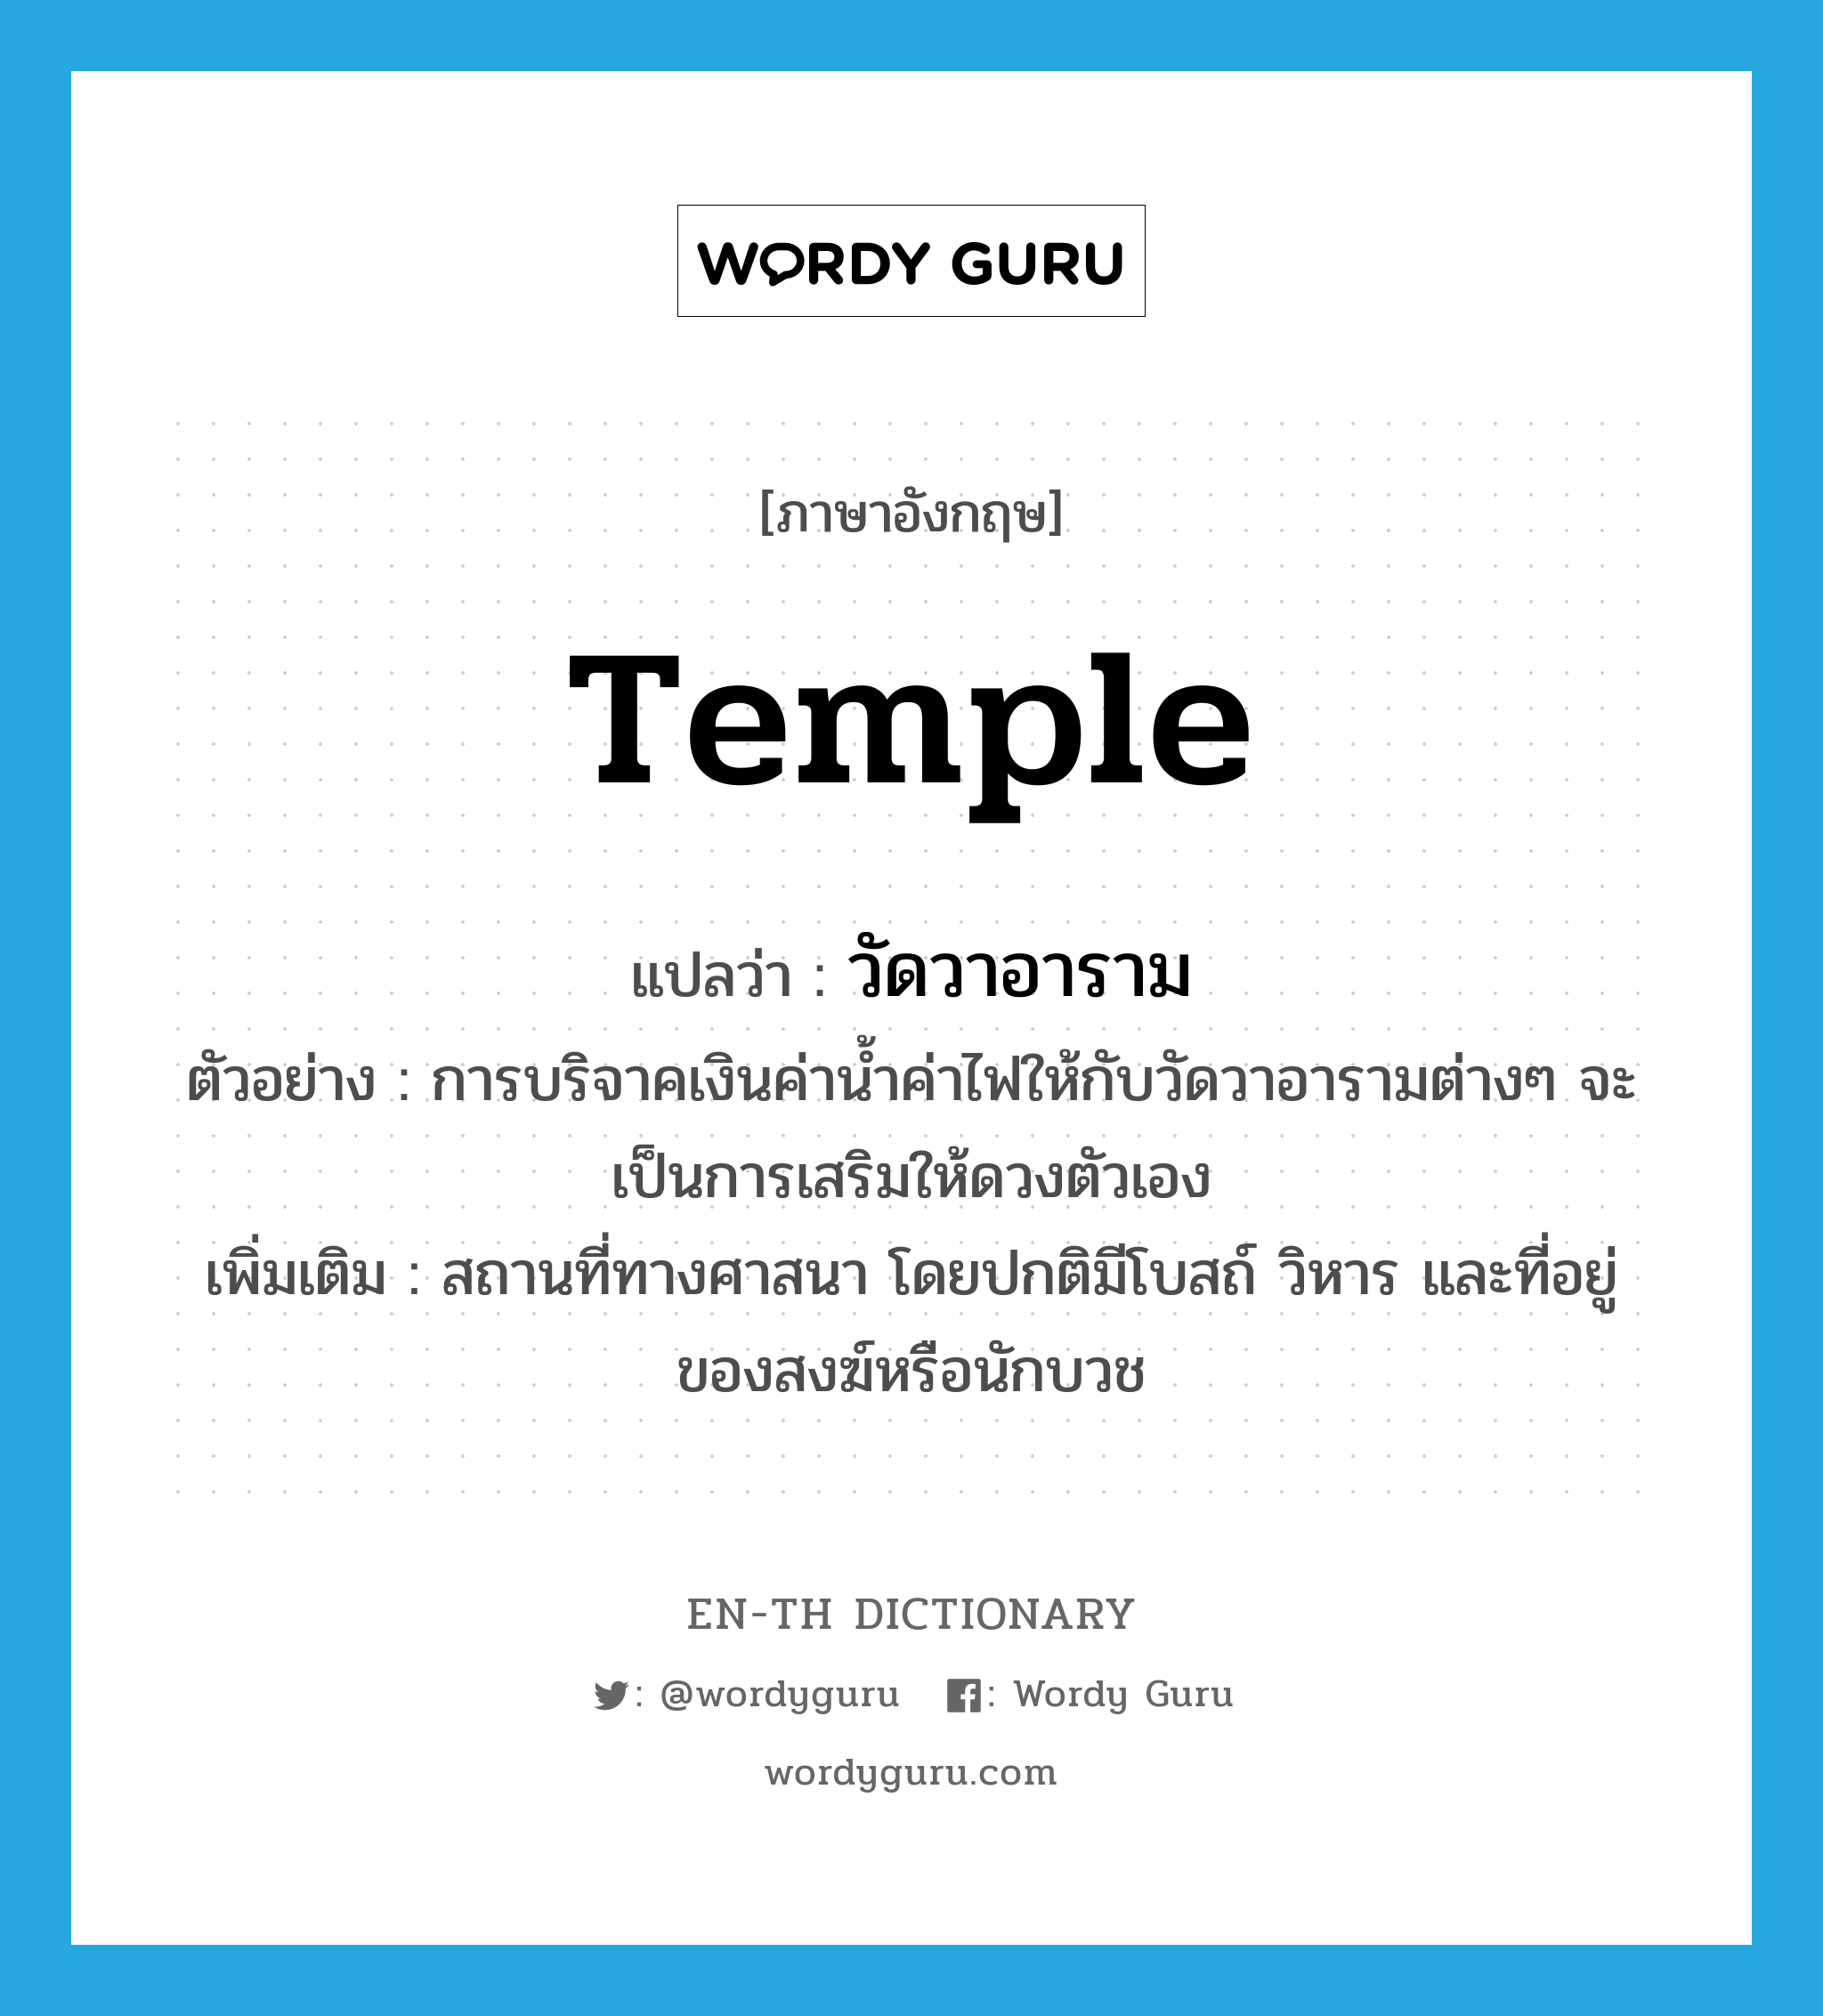 temple แปลว่า?, คำศัพท์ภาษาอังกฤษ temple แปลว่า วัดวาอาราม ประเภท N ตัวอย่าง การบริจาคเงินค่าน้ำค่าไฟให้กับวัดวาอารามต่างๆ จะเป็นการเสริมให้ดวงตัวเอง เพิ่มเติม สถานที่ทางศาสนา โดยปกติมีโบสถ์ วิหาร และที่อยู่ของสงฆ์หรือนักบวช หมวด N